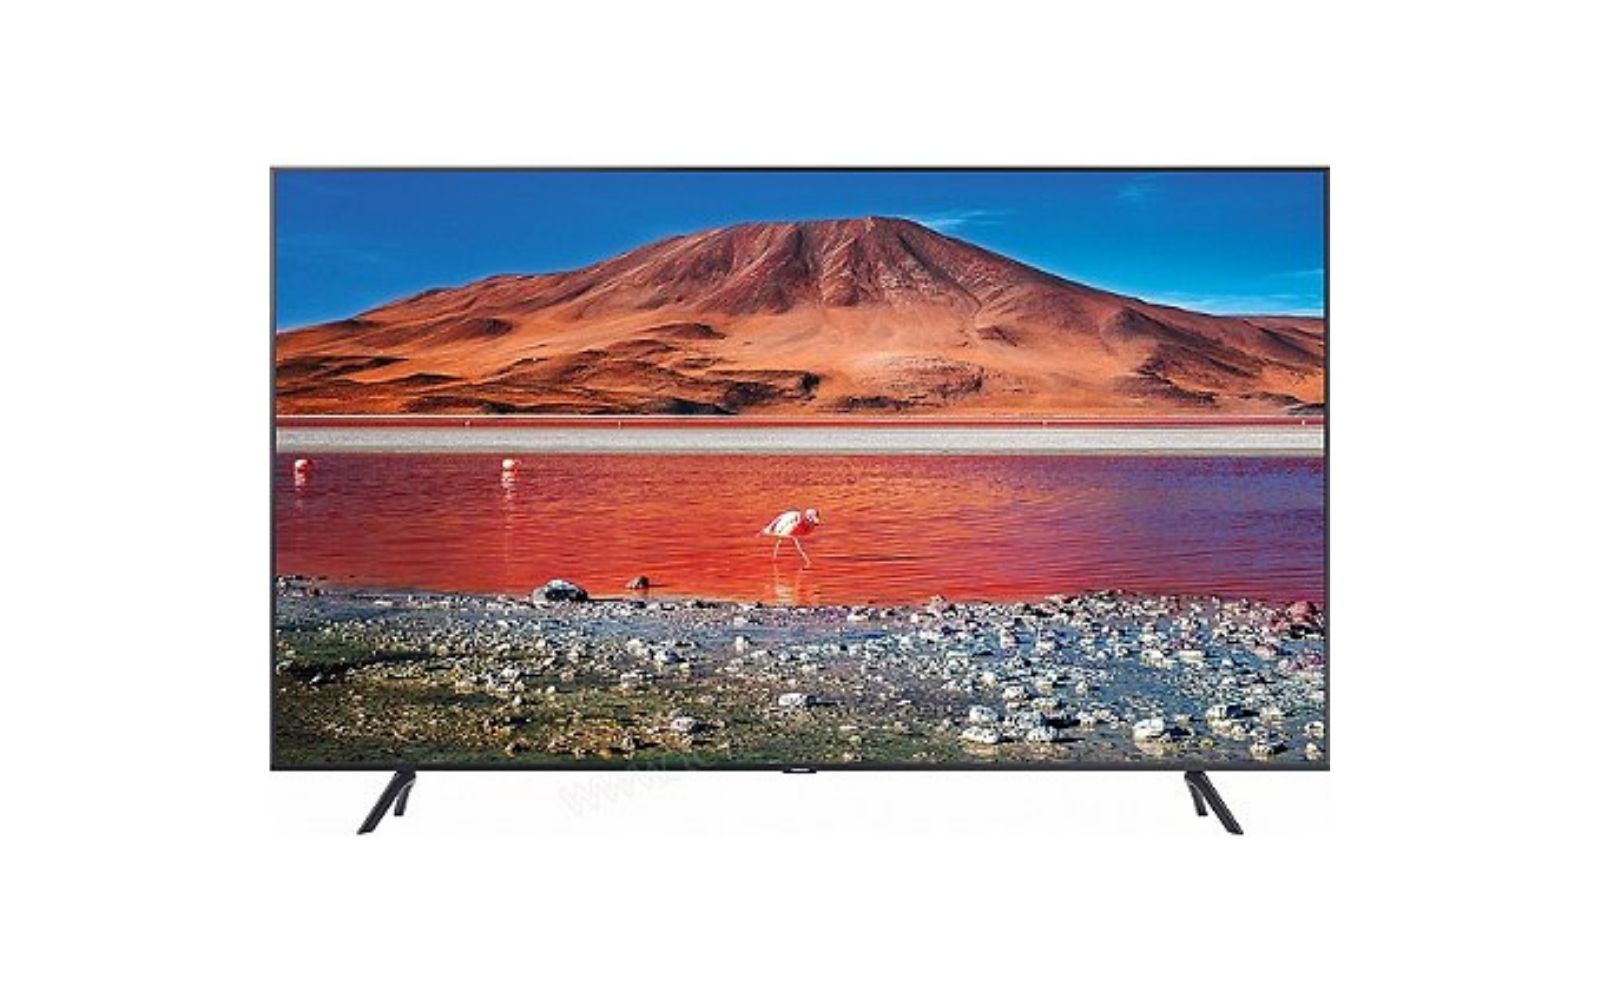 Conforama : Découvrez la TV Samsung UHD Led 4K. (Source : Shutterstock)